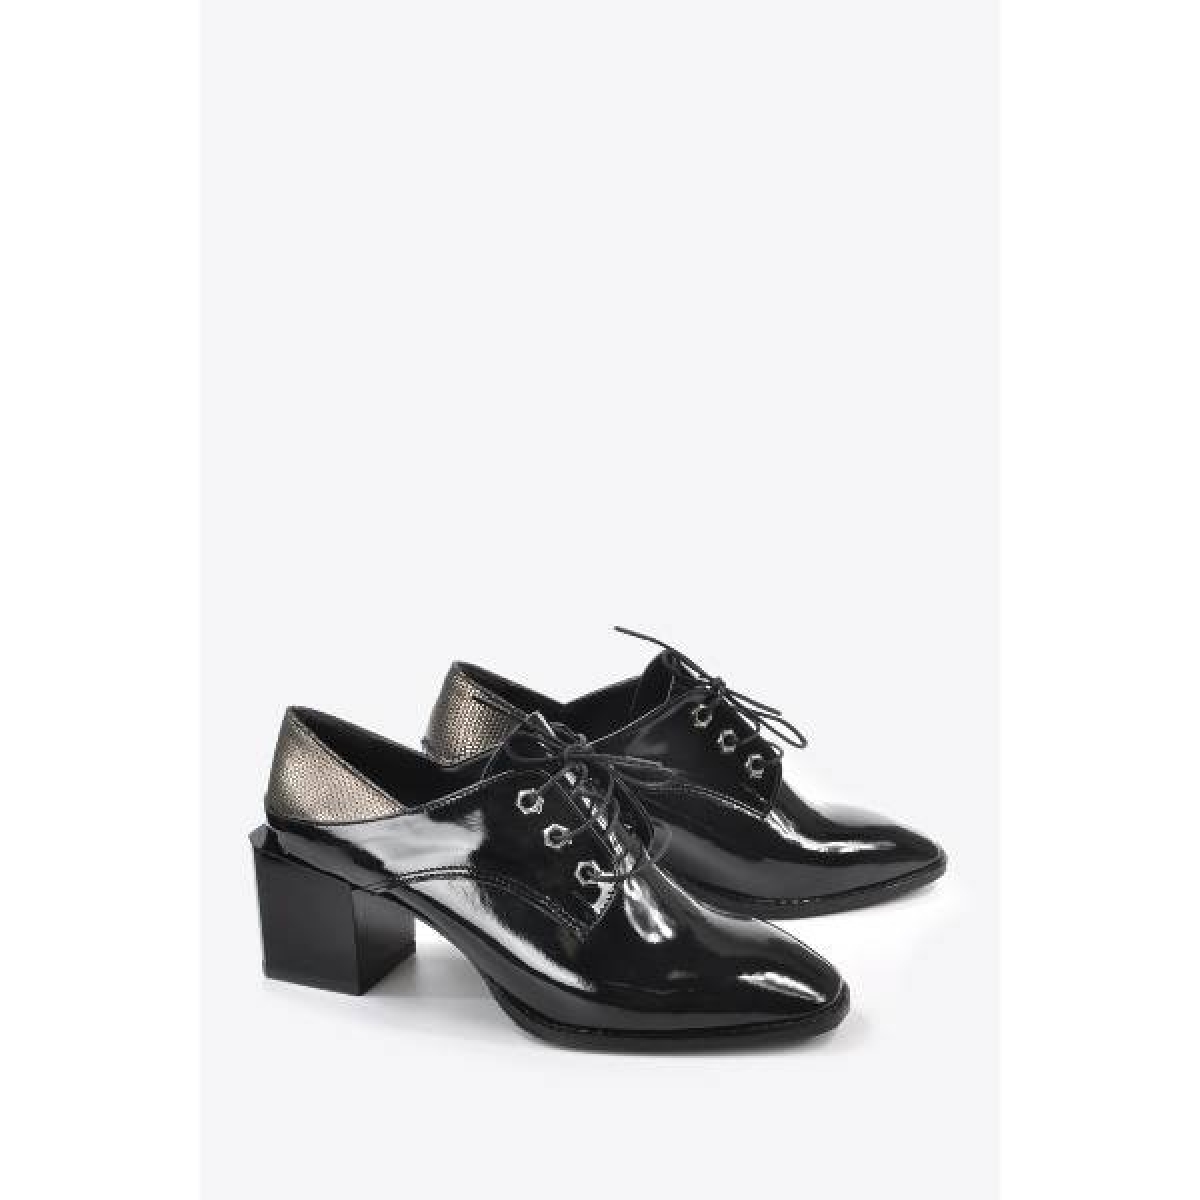 Flo Kadın  Siyah Rugan Klasik Topuklu Ayakkabı VZN20-011K. 5